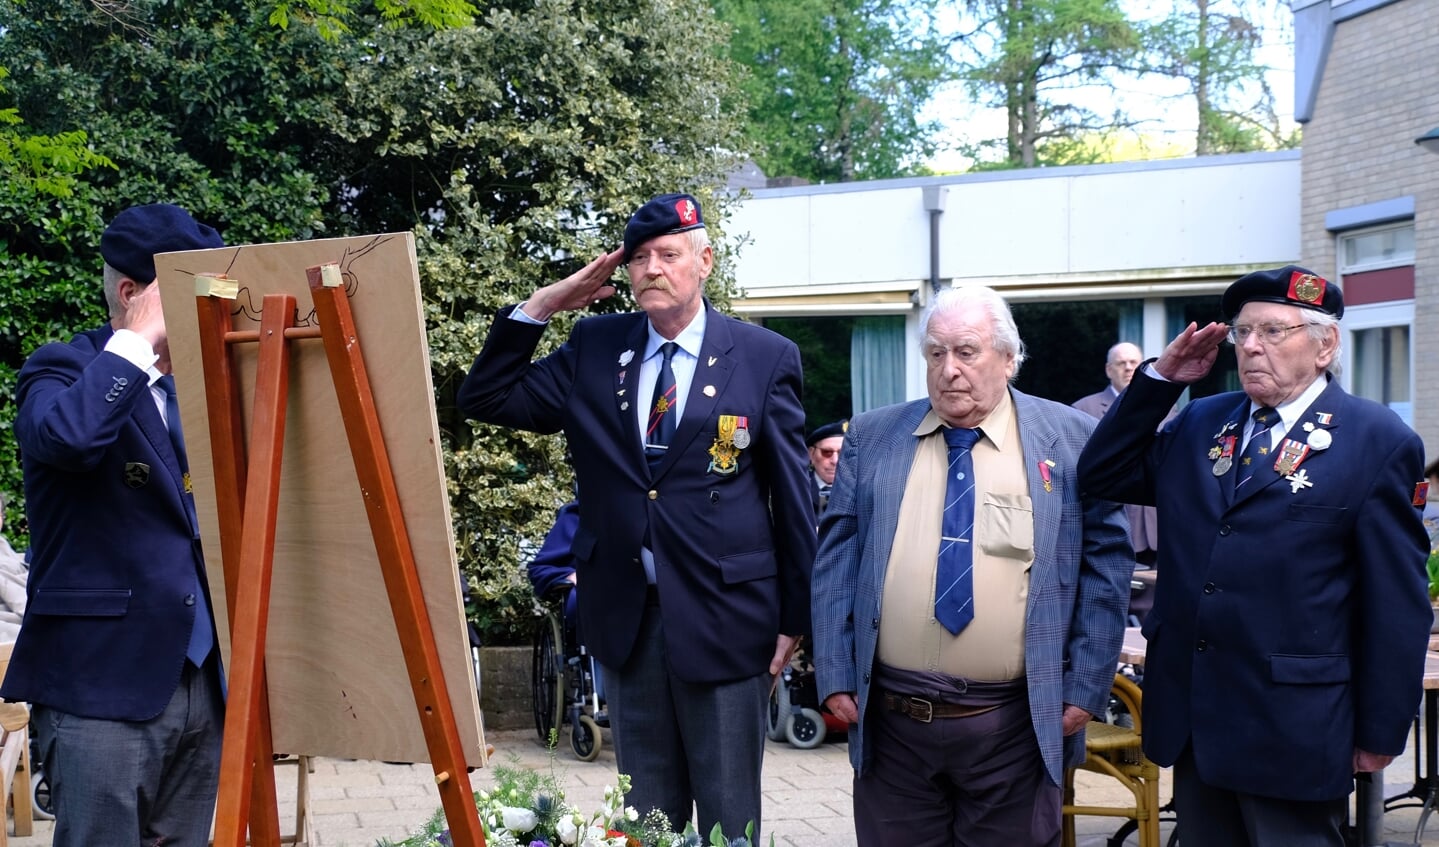 Van links naar rechts: Wil luitenant der 1e klasse, meneer Zilverberg, Jan van der Sande korporaal der 1e klasse.